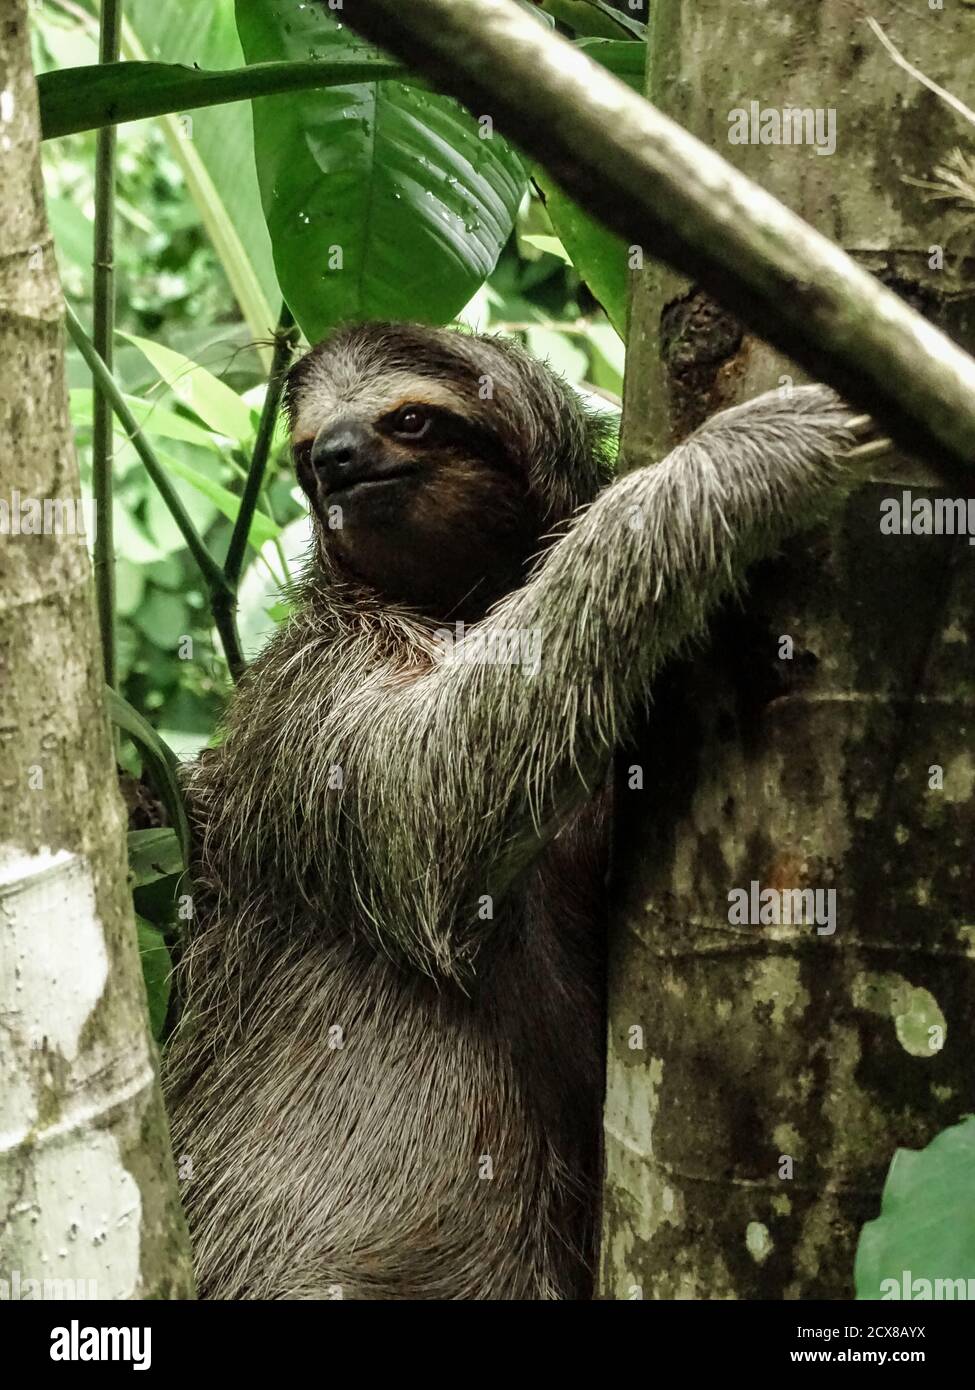 Three-toed sloth climbing up the tree at Panama’s Isla Bastimentos. Stock Photo